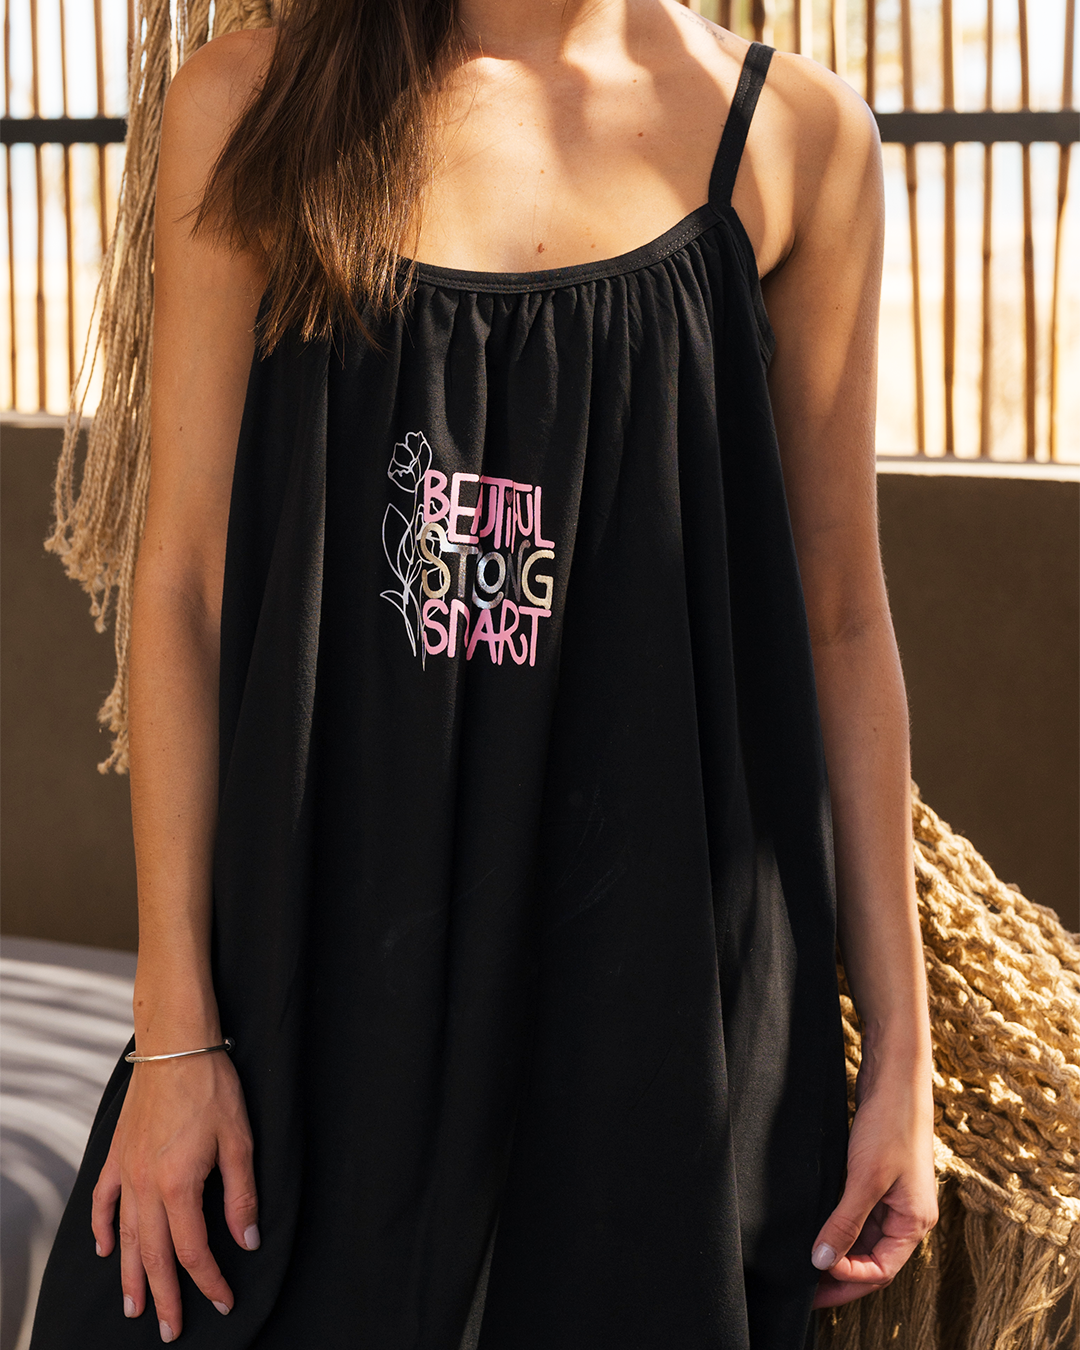 Beautiful strong women's nightgown